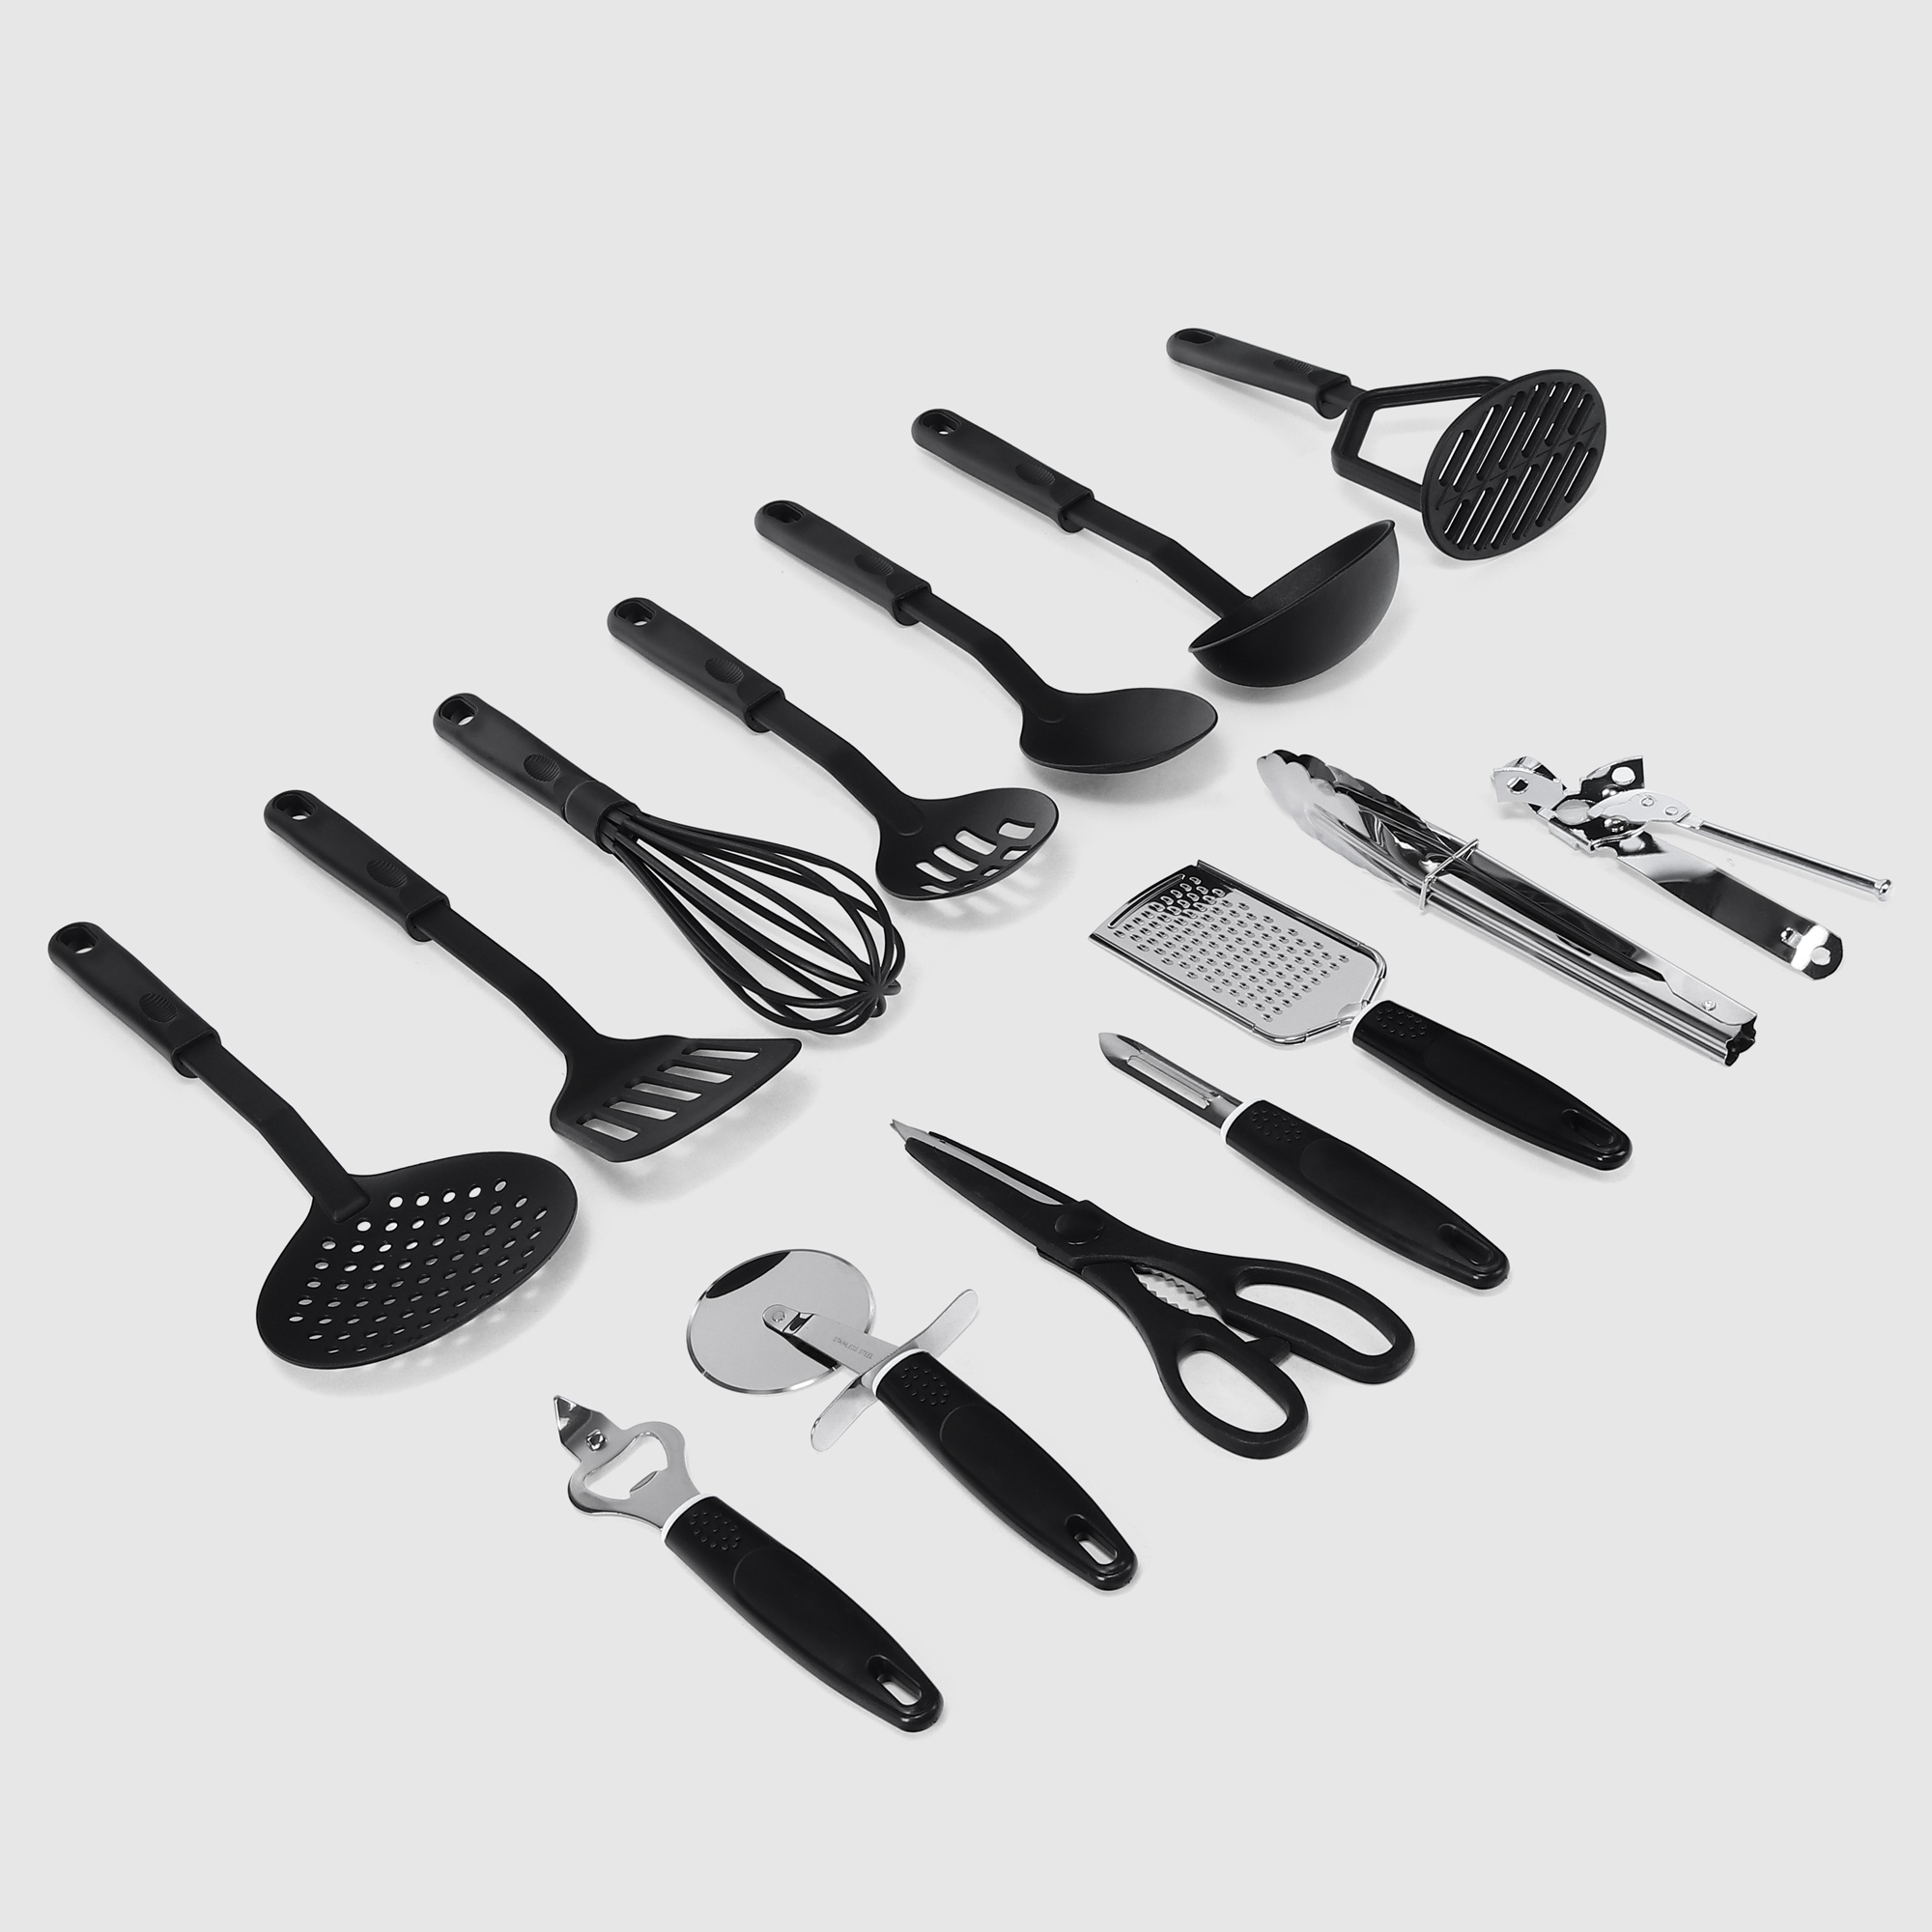 Набор кухонных принадлежностей Vantage 14 предметов черный набор кухонных принадлежностей vantage 14 предметов черный